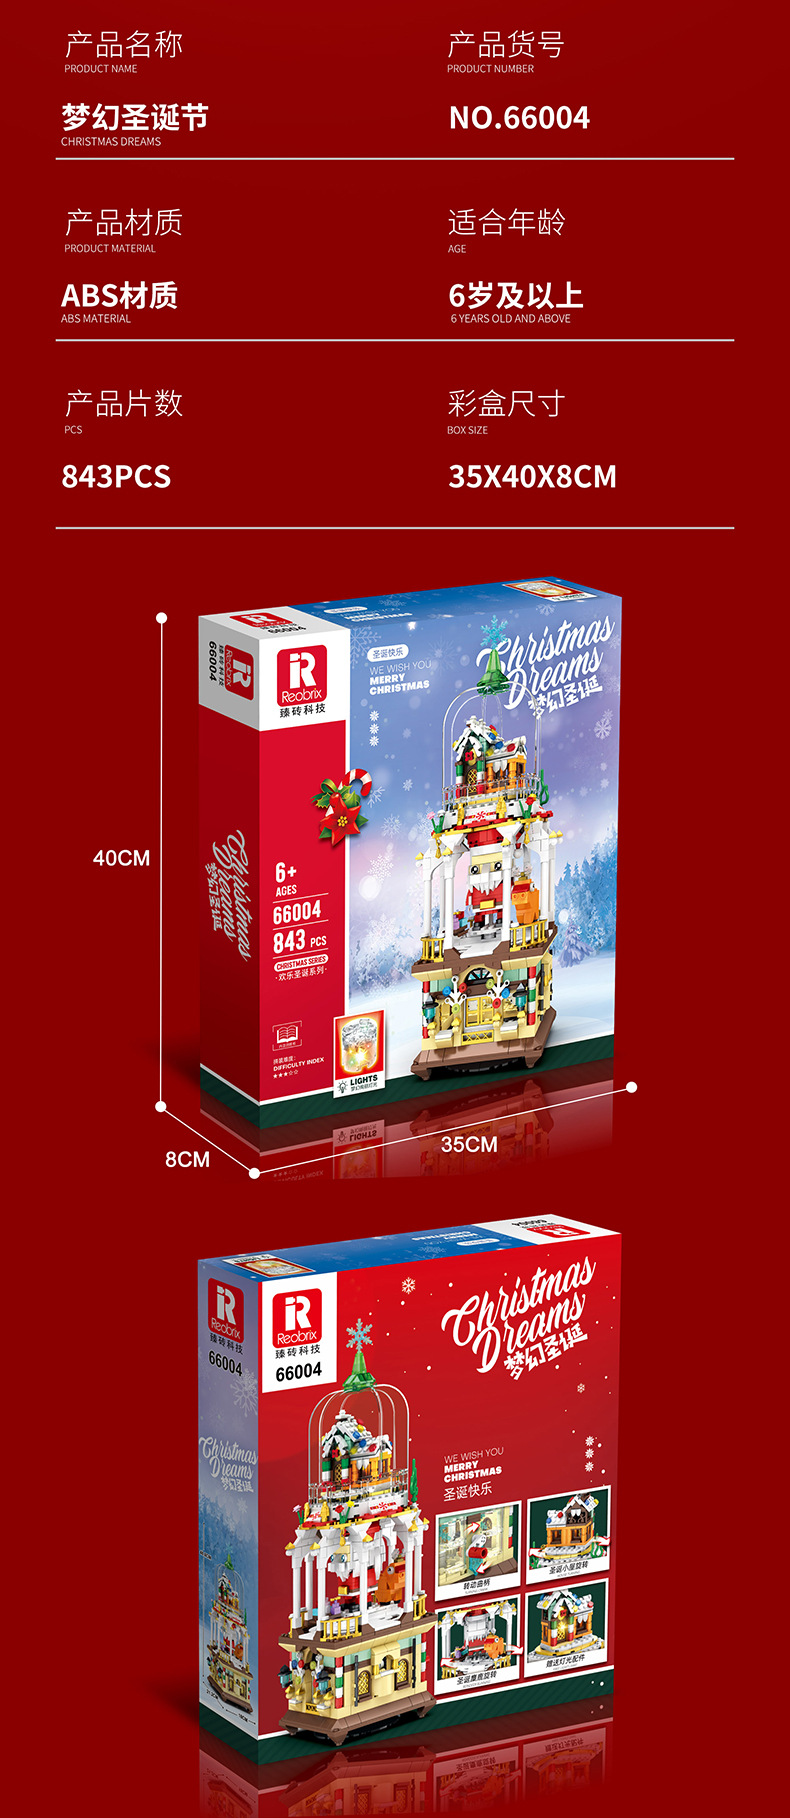 Reobrix 66004 Merry Christmas Series Fantasy-Weihnachtsbaustein-Spielzeugset